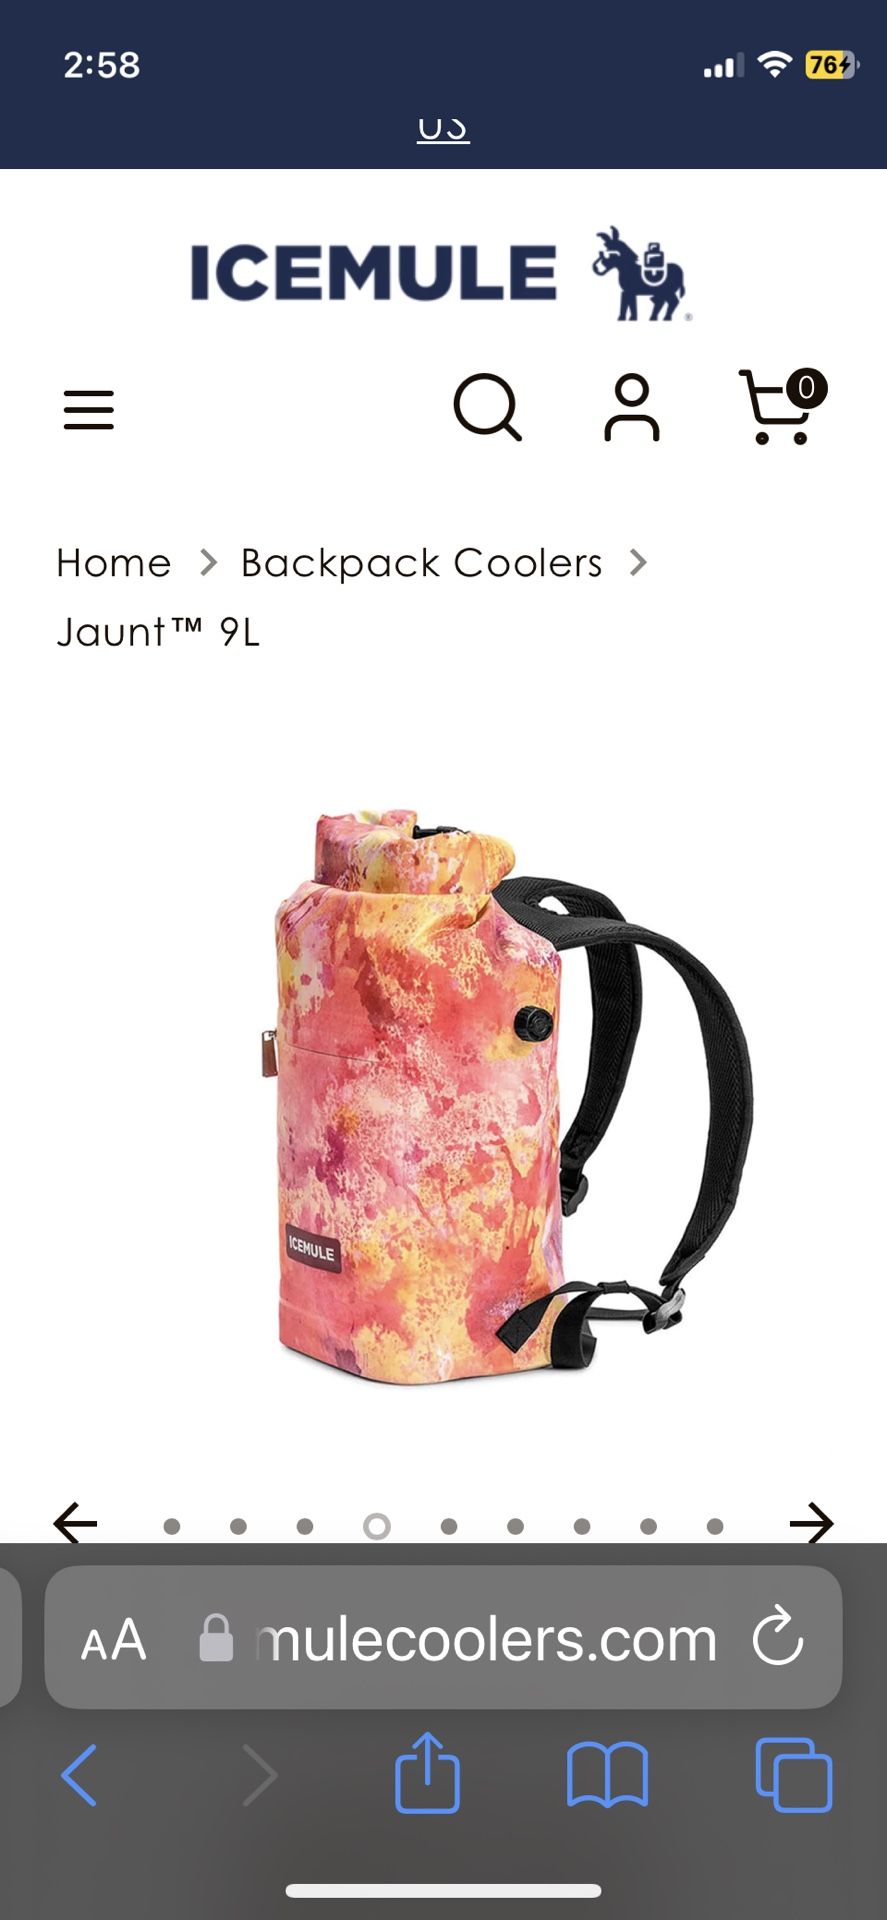 Icemule Backpack Coolers, Mango & Tie-dye, 9 Liters